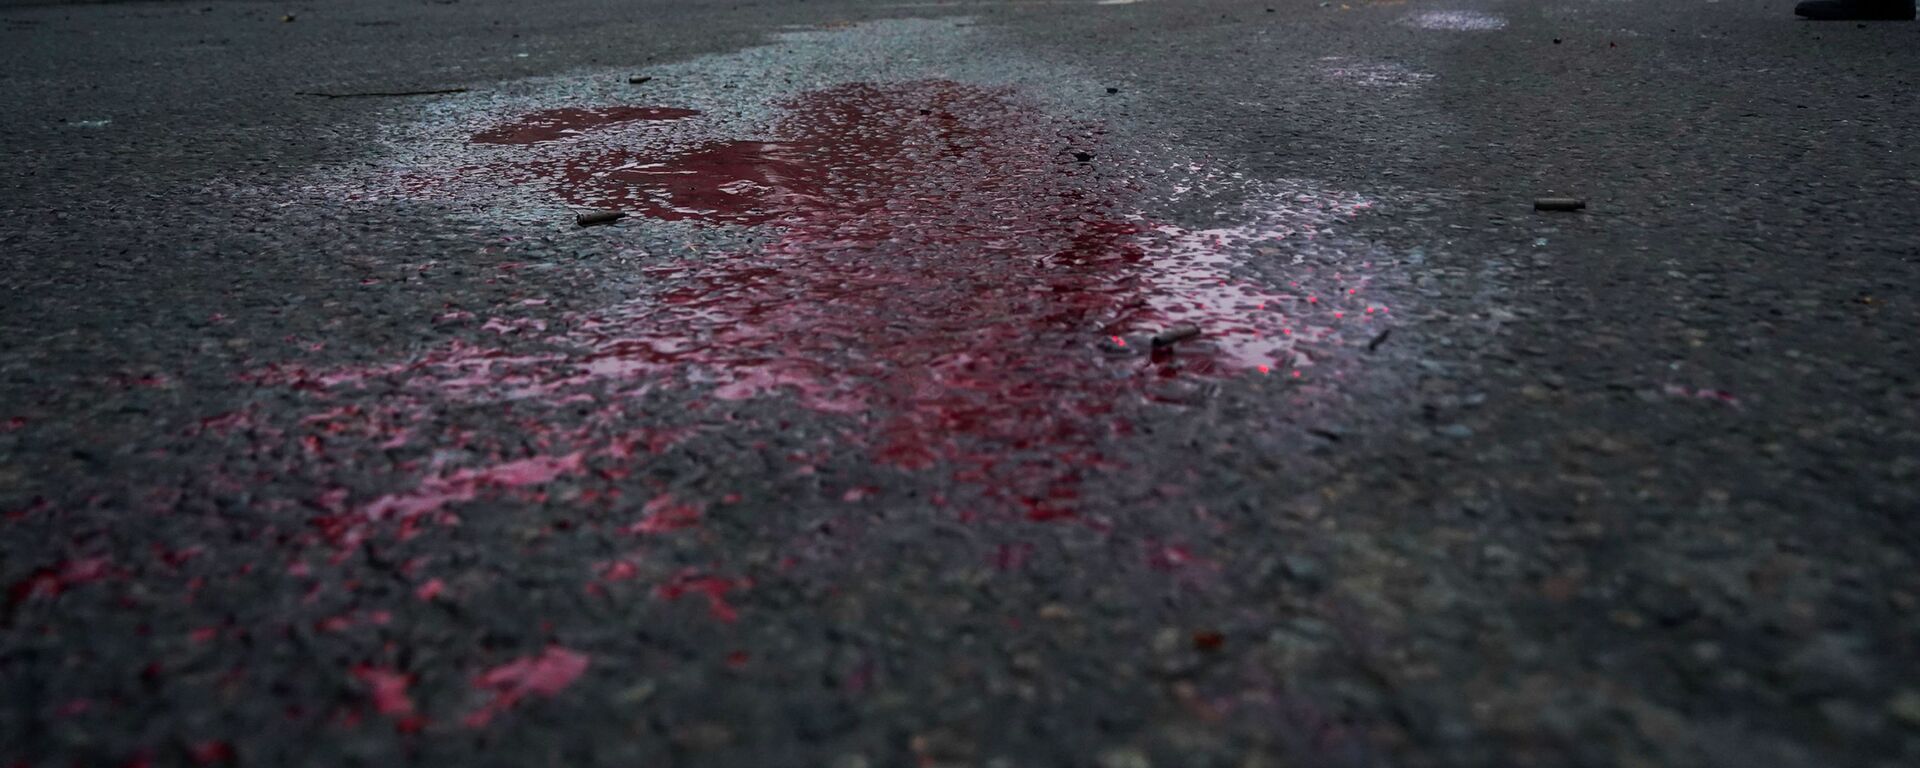 Кровь видна на дороге, когда казахстанские солдаты патрулируют улицу после столкновений в Алматы, Казахстан, четверг, 6 января 2022 г.  - Sputnik Казахстан, 1920, 28.04.2022